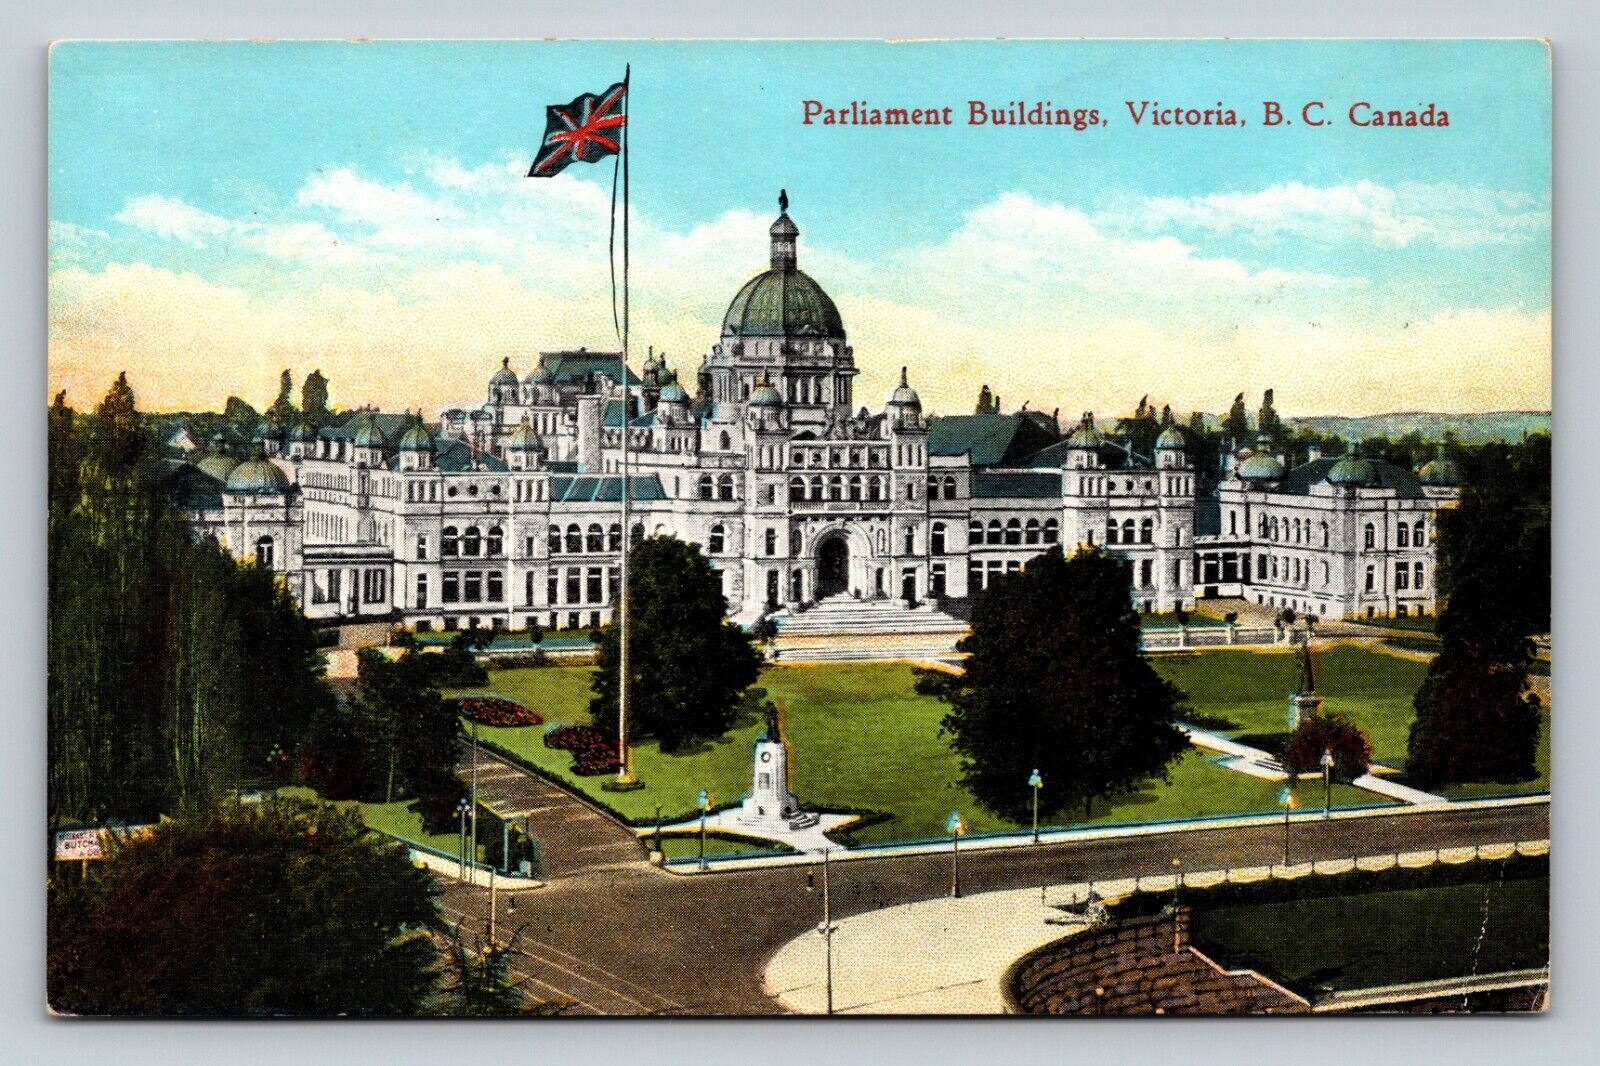 Parliament Buildings Victoria B.C. Canada Landscape View VINTAGE Postcard